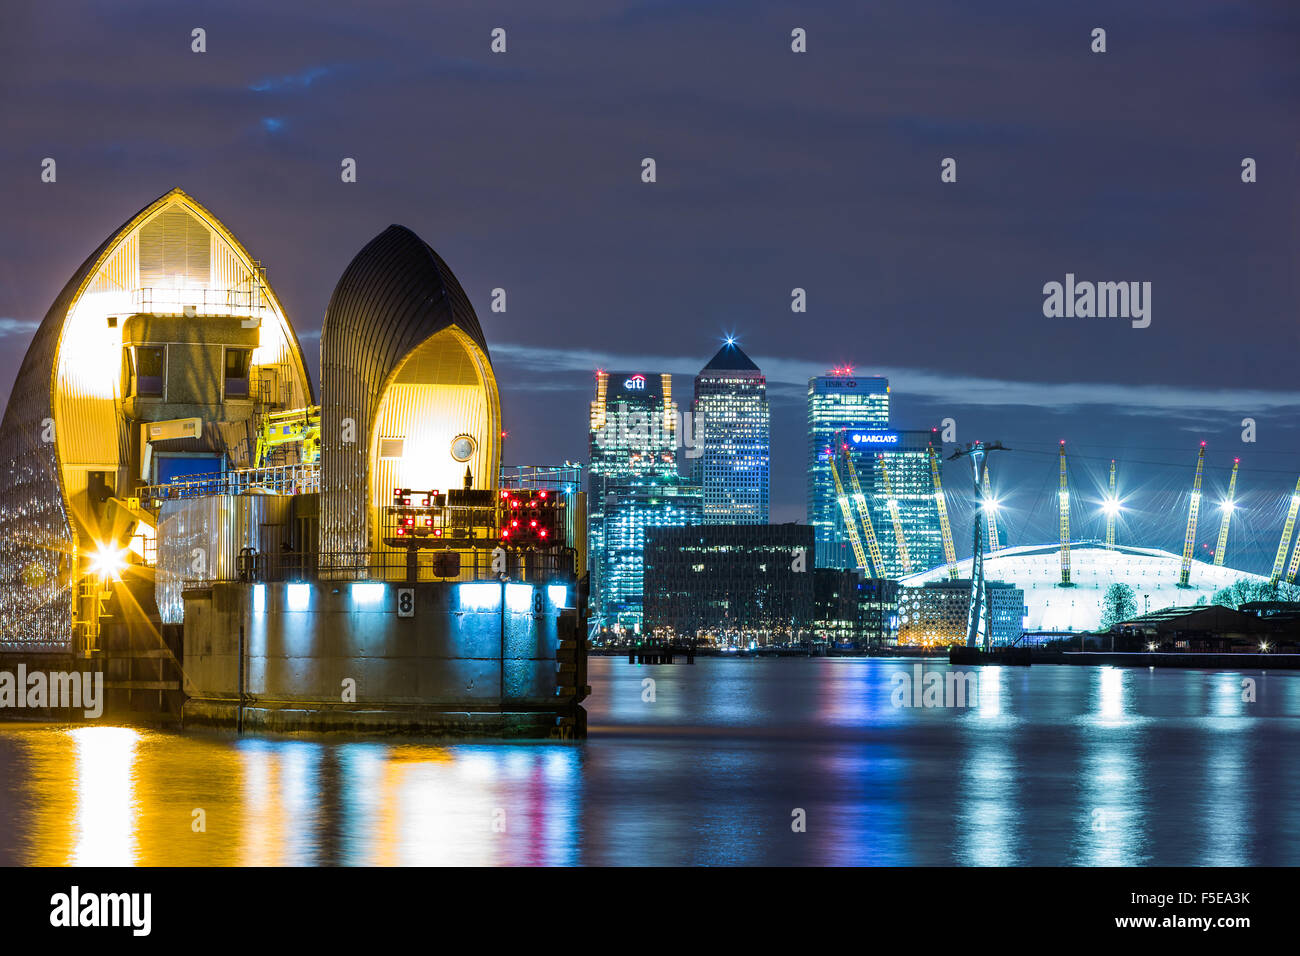 Thames Barrier, Millennium Dome (O2 Arena) et de Canary Wharf de nuit, Londres, Angleterre, Royaume-Uni, Europe Banque D'Images